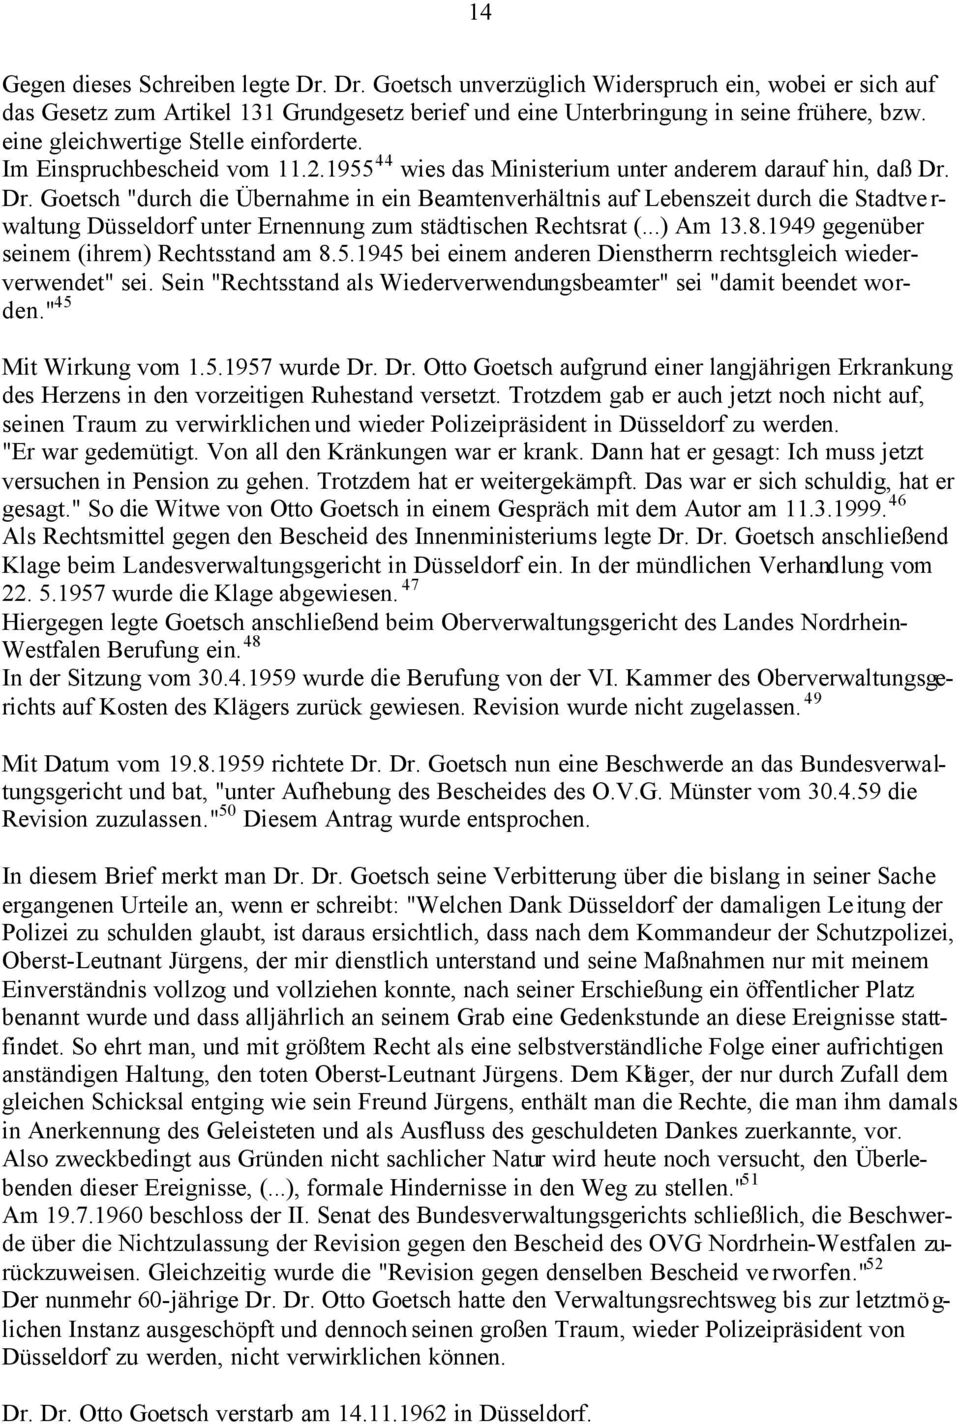 Dr. Goetsch "durch die Übernahme in ein Beamtenverhältnis auf Lebenszeit durch die Stadtve r- waltung Düsseldorf unter Ernennung zum städtischen Rechtsrat (...) Am 13.8.